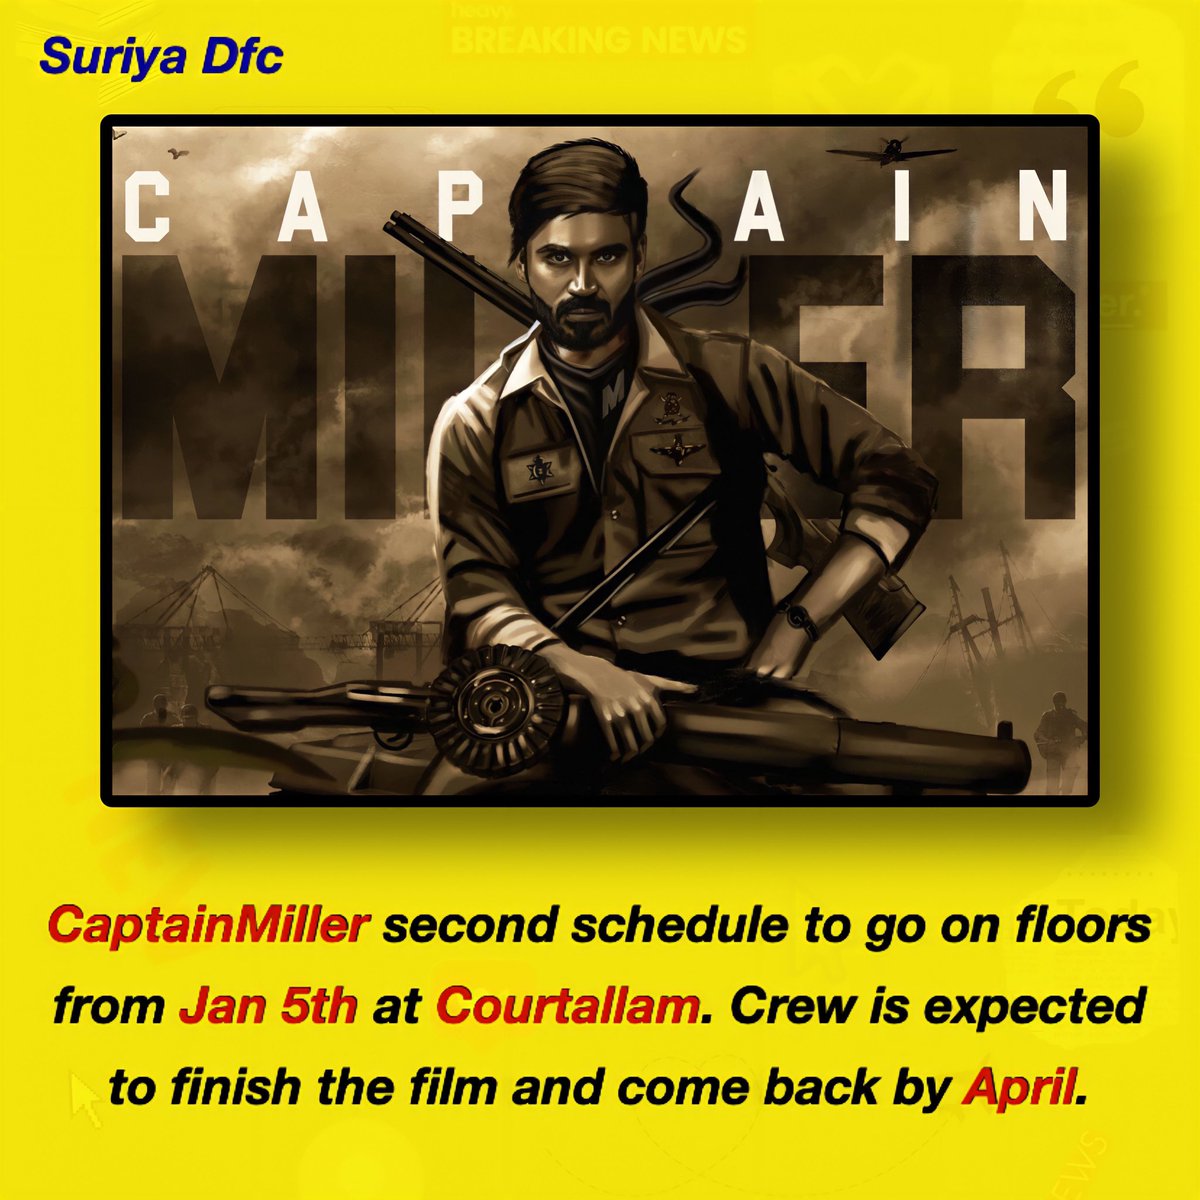 #CaptainMiller 2nd schedule Jan 5th at Courtallam😍🔥 

@ArunMatheswaran @dhanushkraja @gvprakash